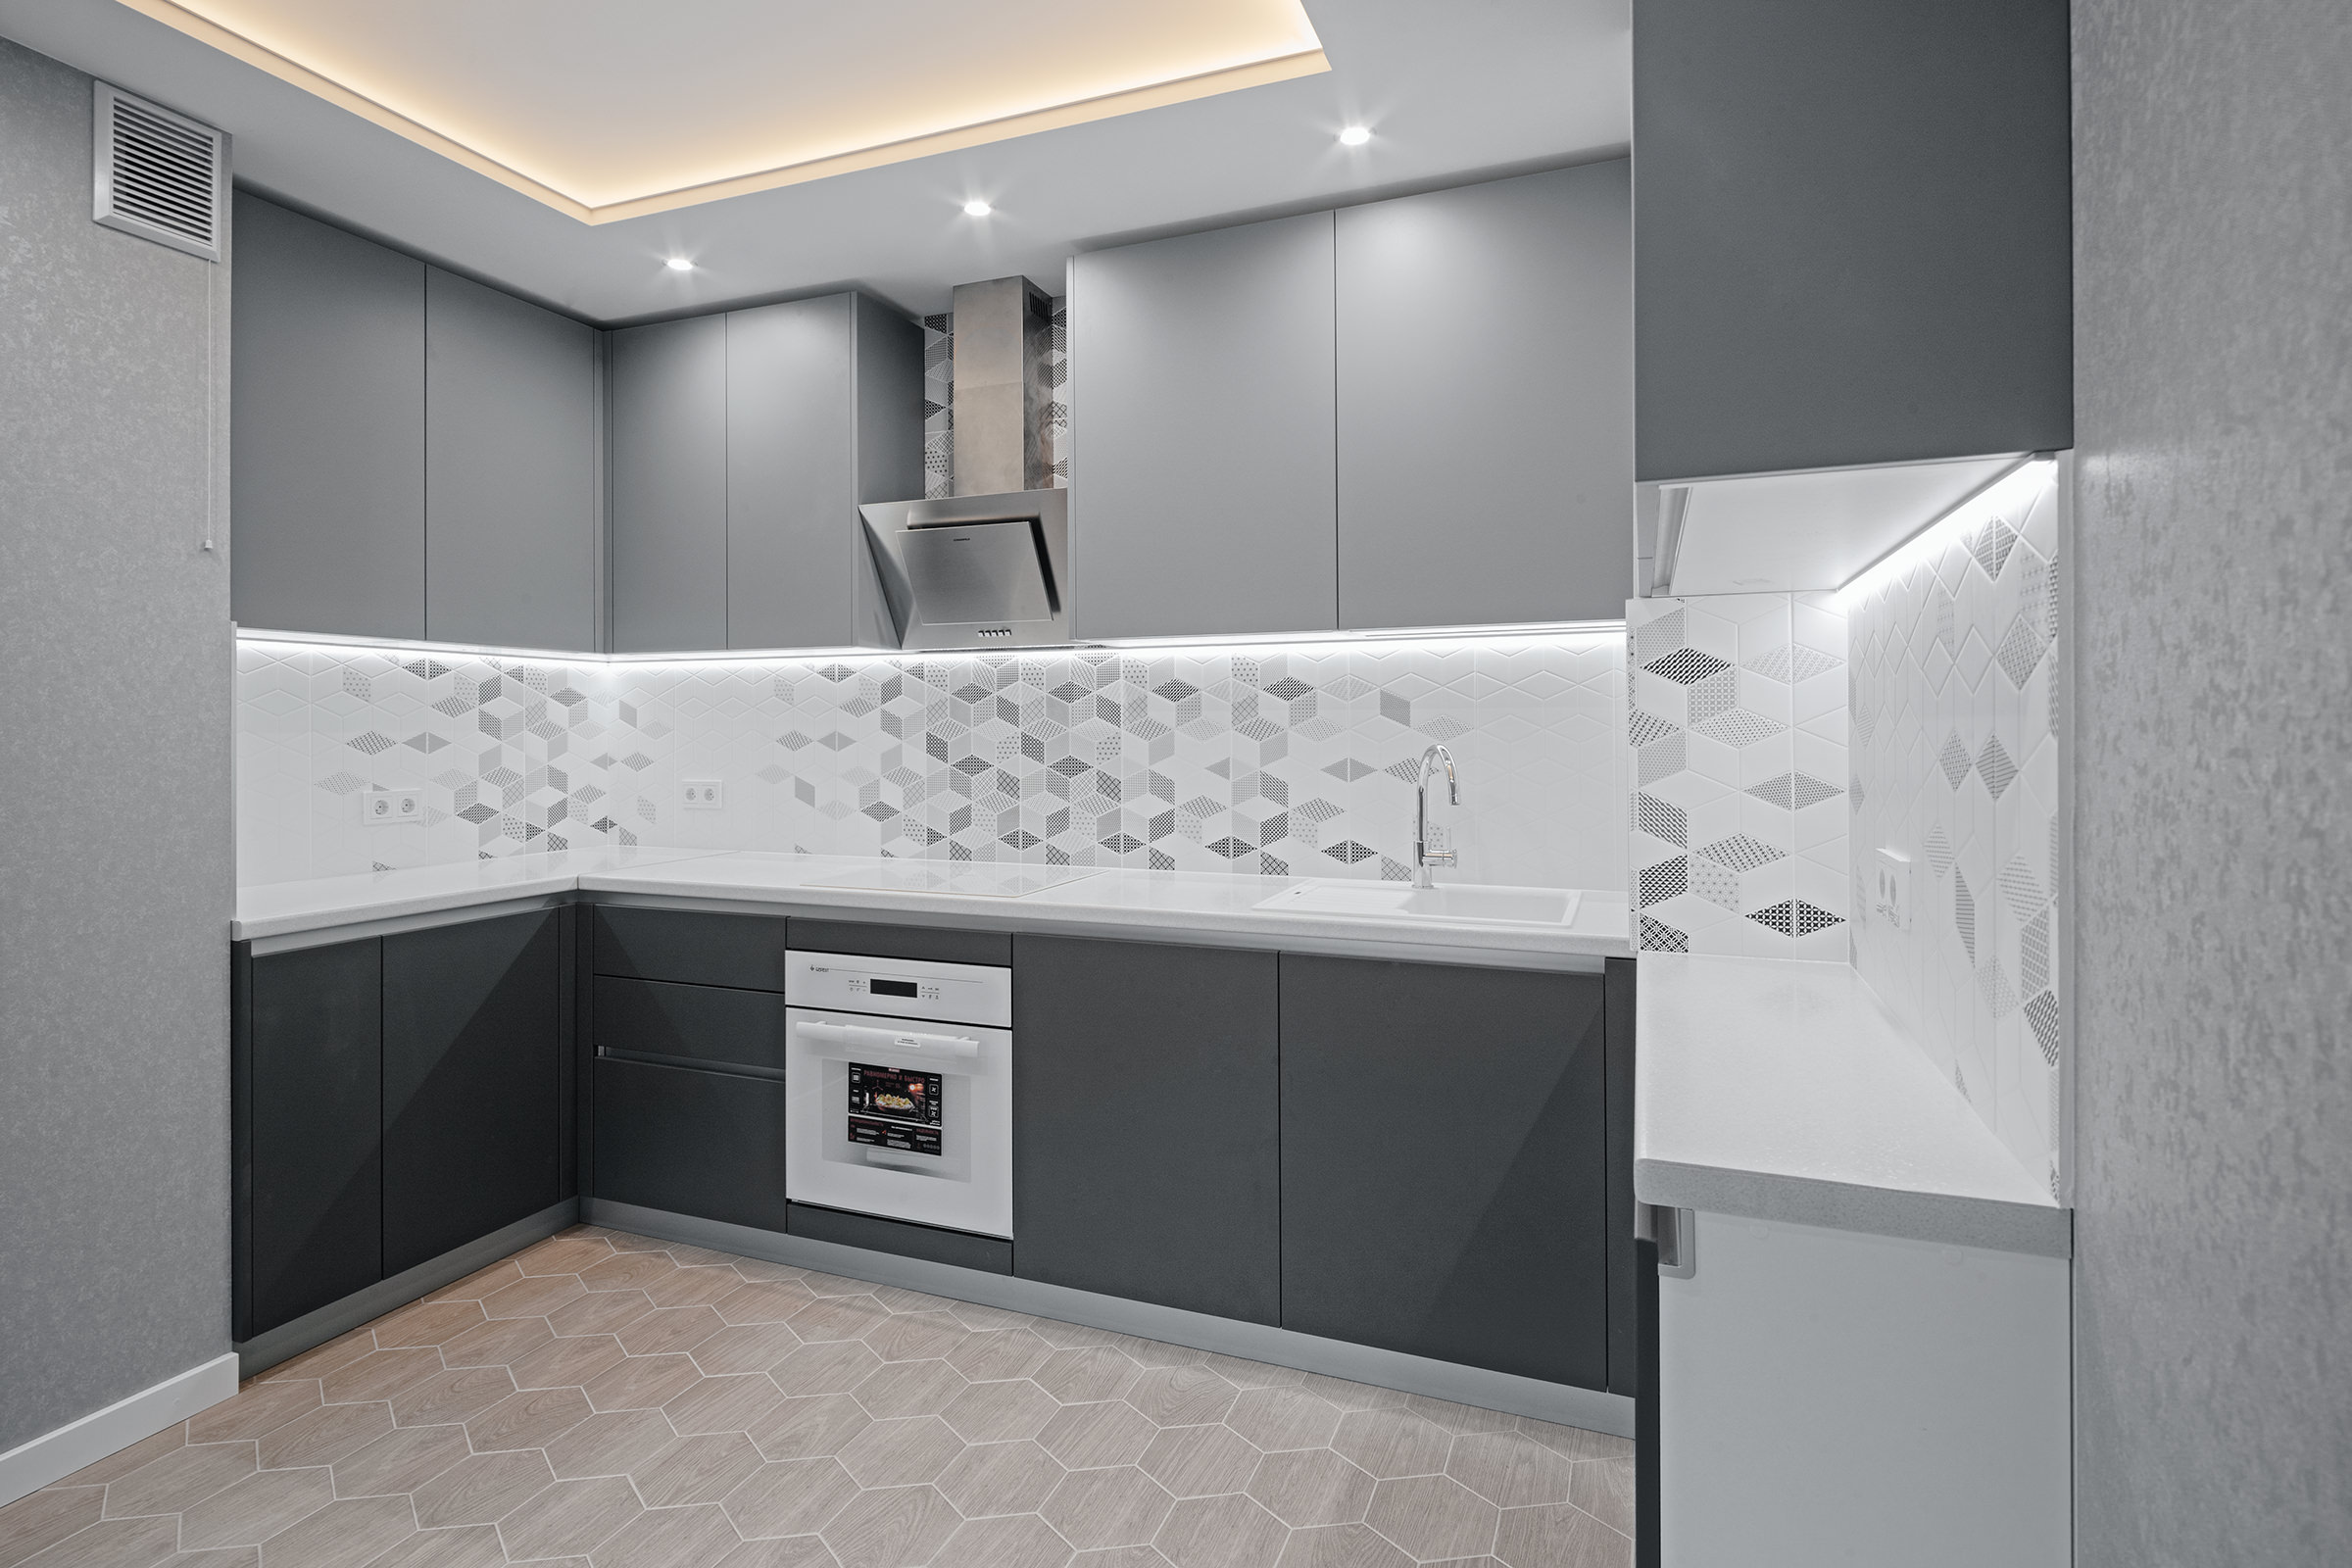 Съёмка кухонной мебели в светло-серых тонах со встроенной бытовой техникой для интернет-магазина компании производителя кухонь